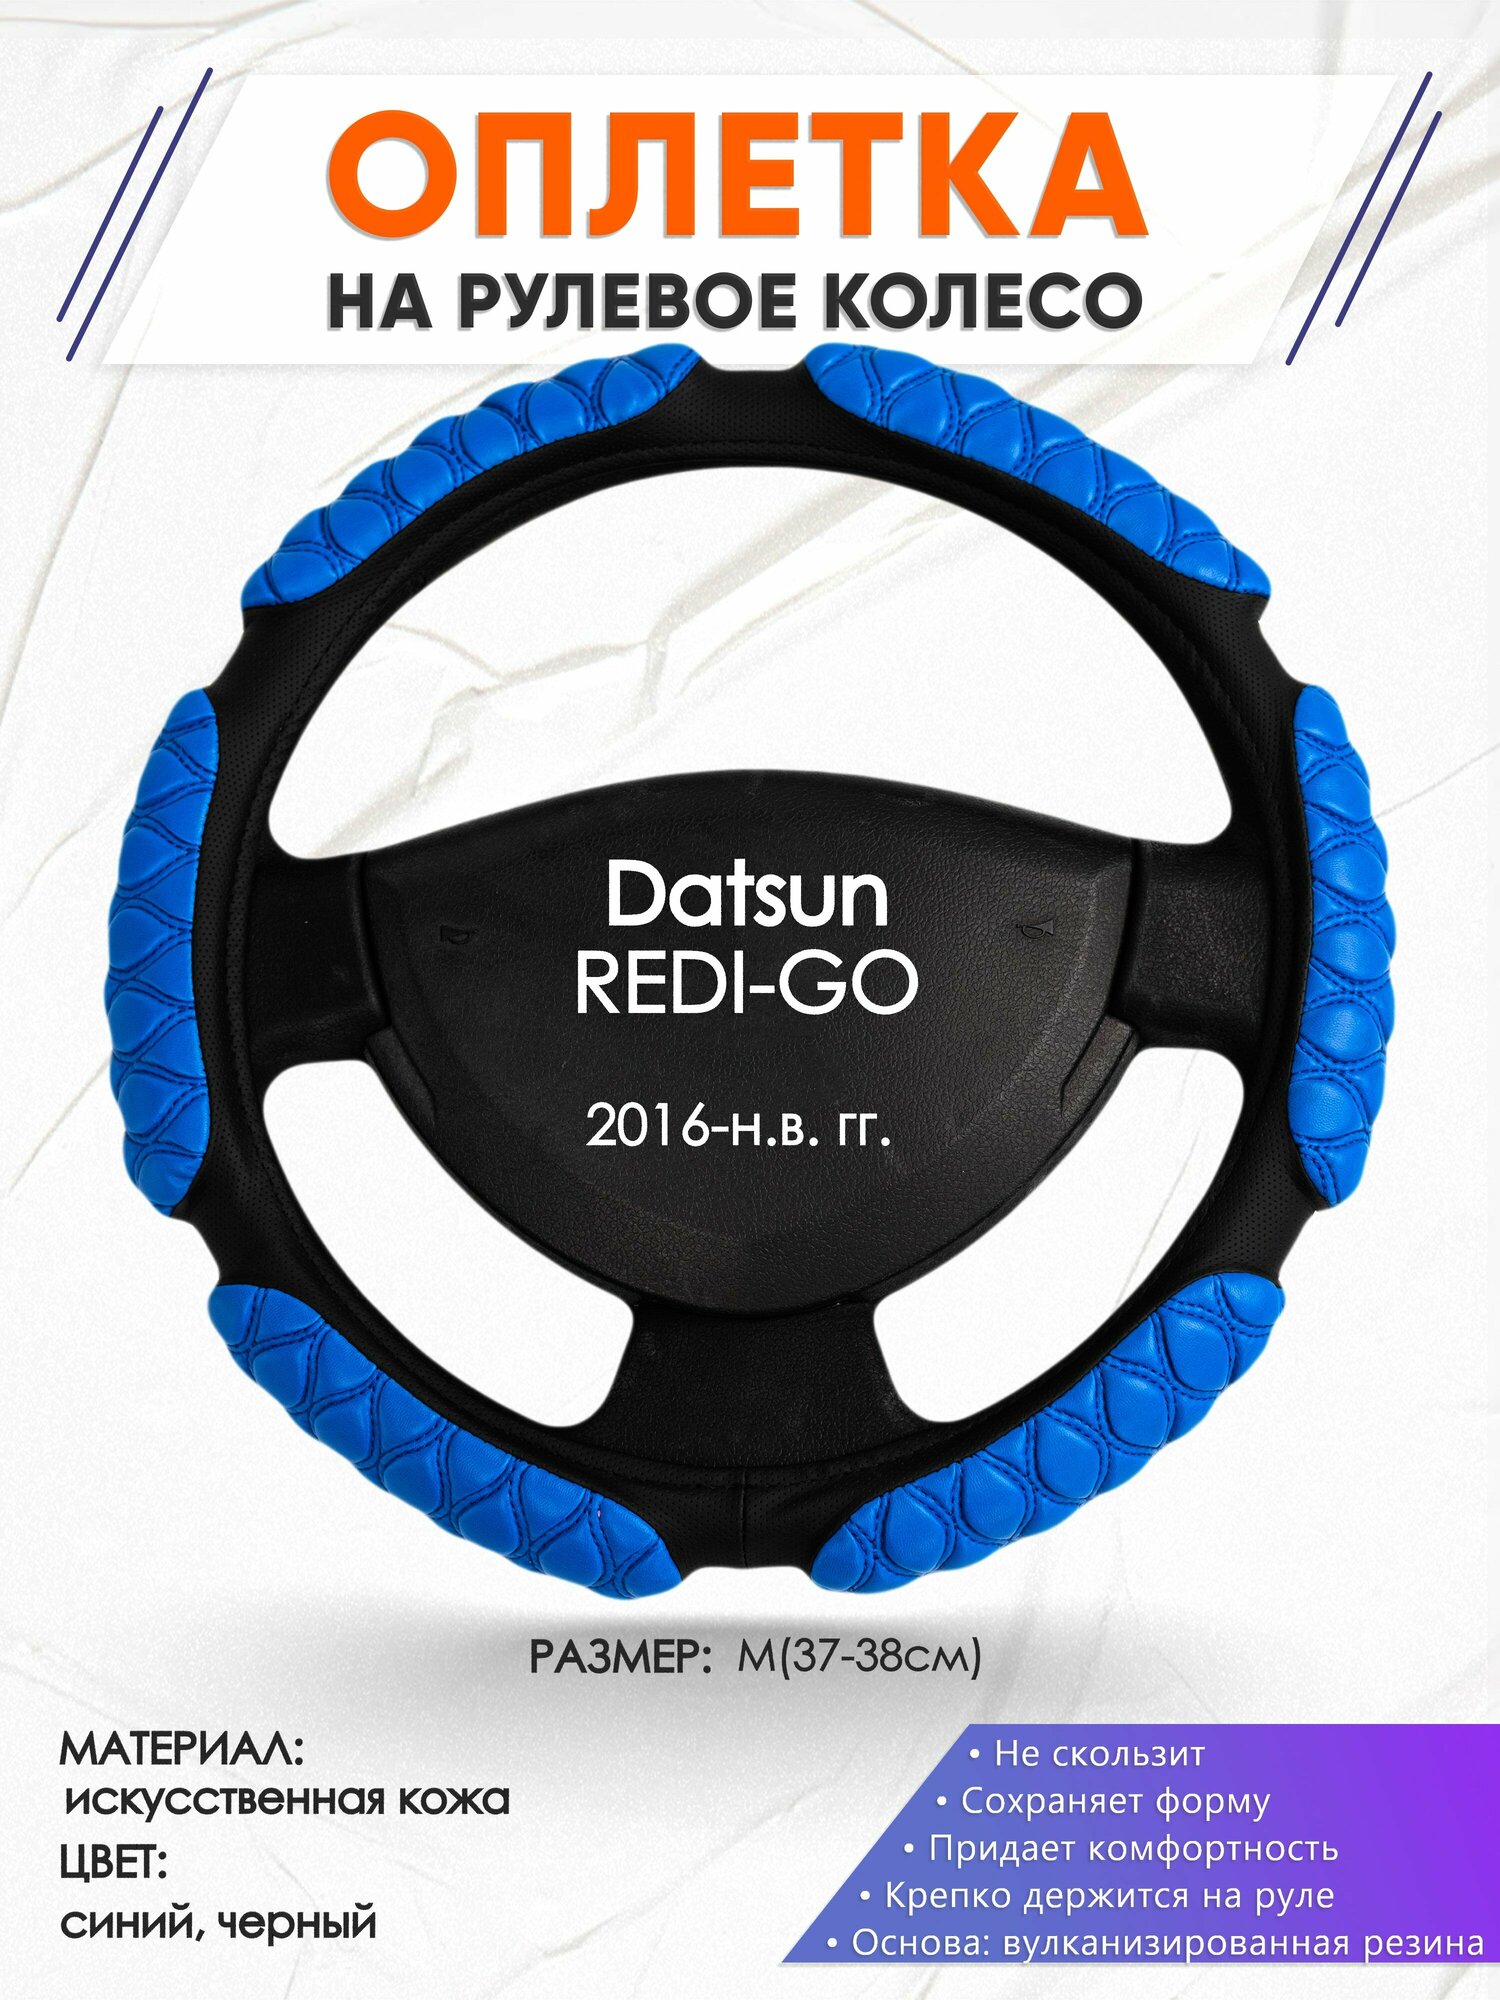 Оплетка наруль для Datsun REDI-GO(Датсун Реди Го) 2016-н. в. годов выпуска, размер M(37-38см), Искусственная кожа 02